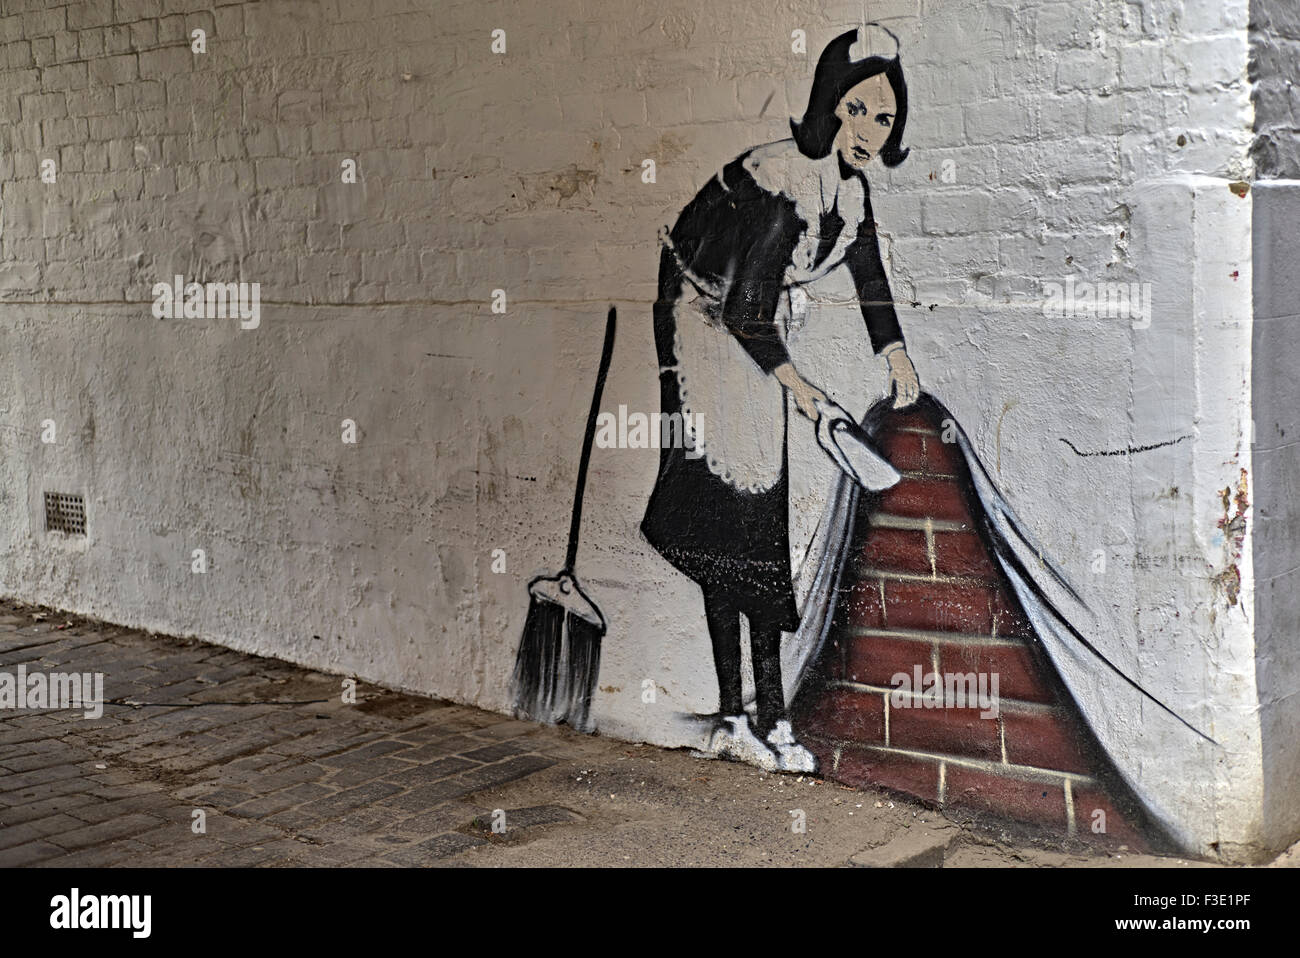 Wall art  'Banksy style' England UK Stock Photo